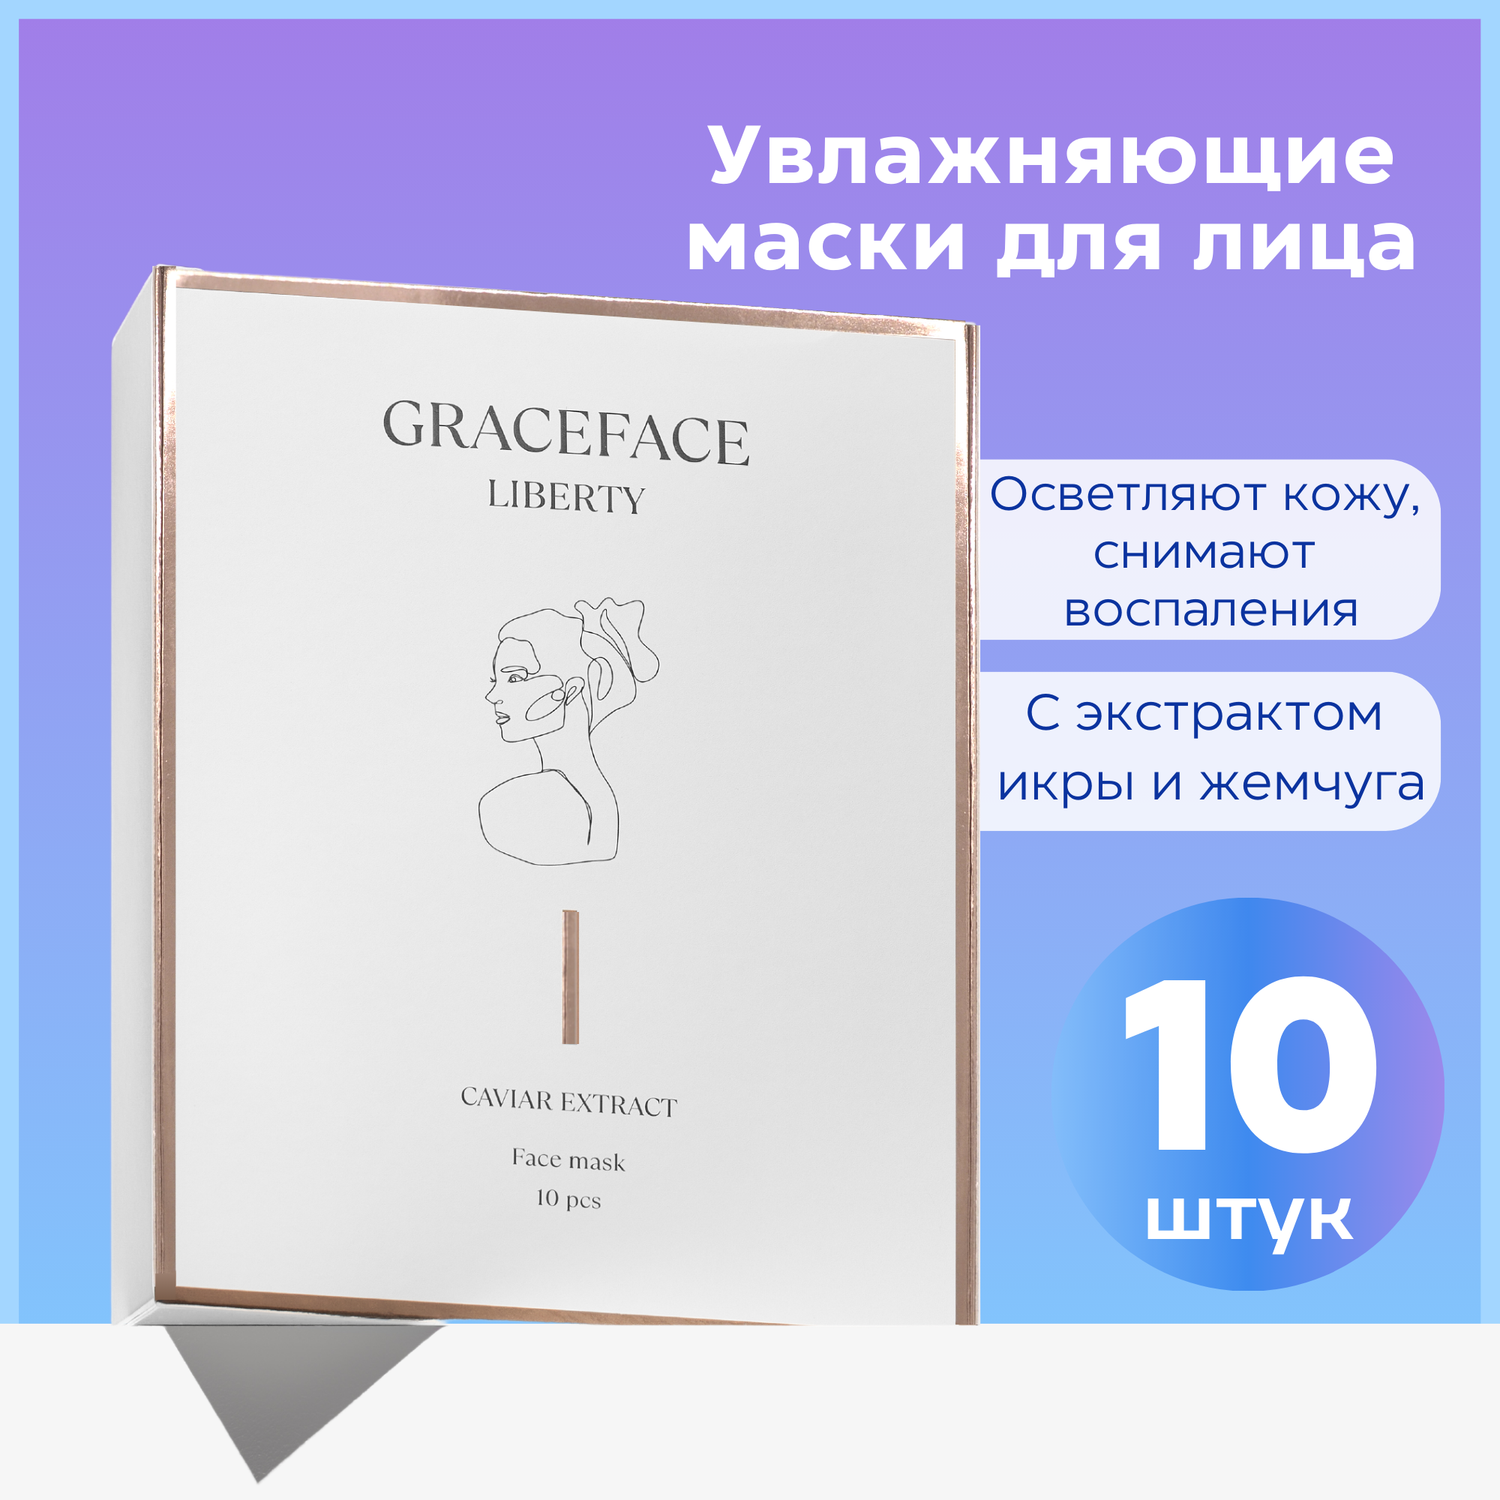 Набор тканевых масок для лица GraceFACE увлажняющие с экстрактом икры и жемчуга 10 шт - фото 1